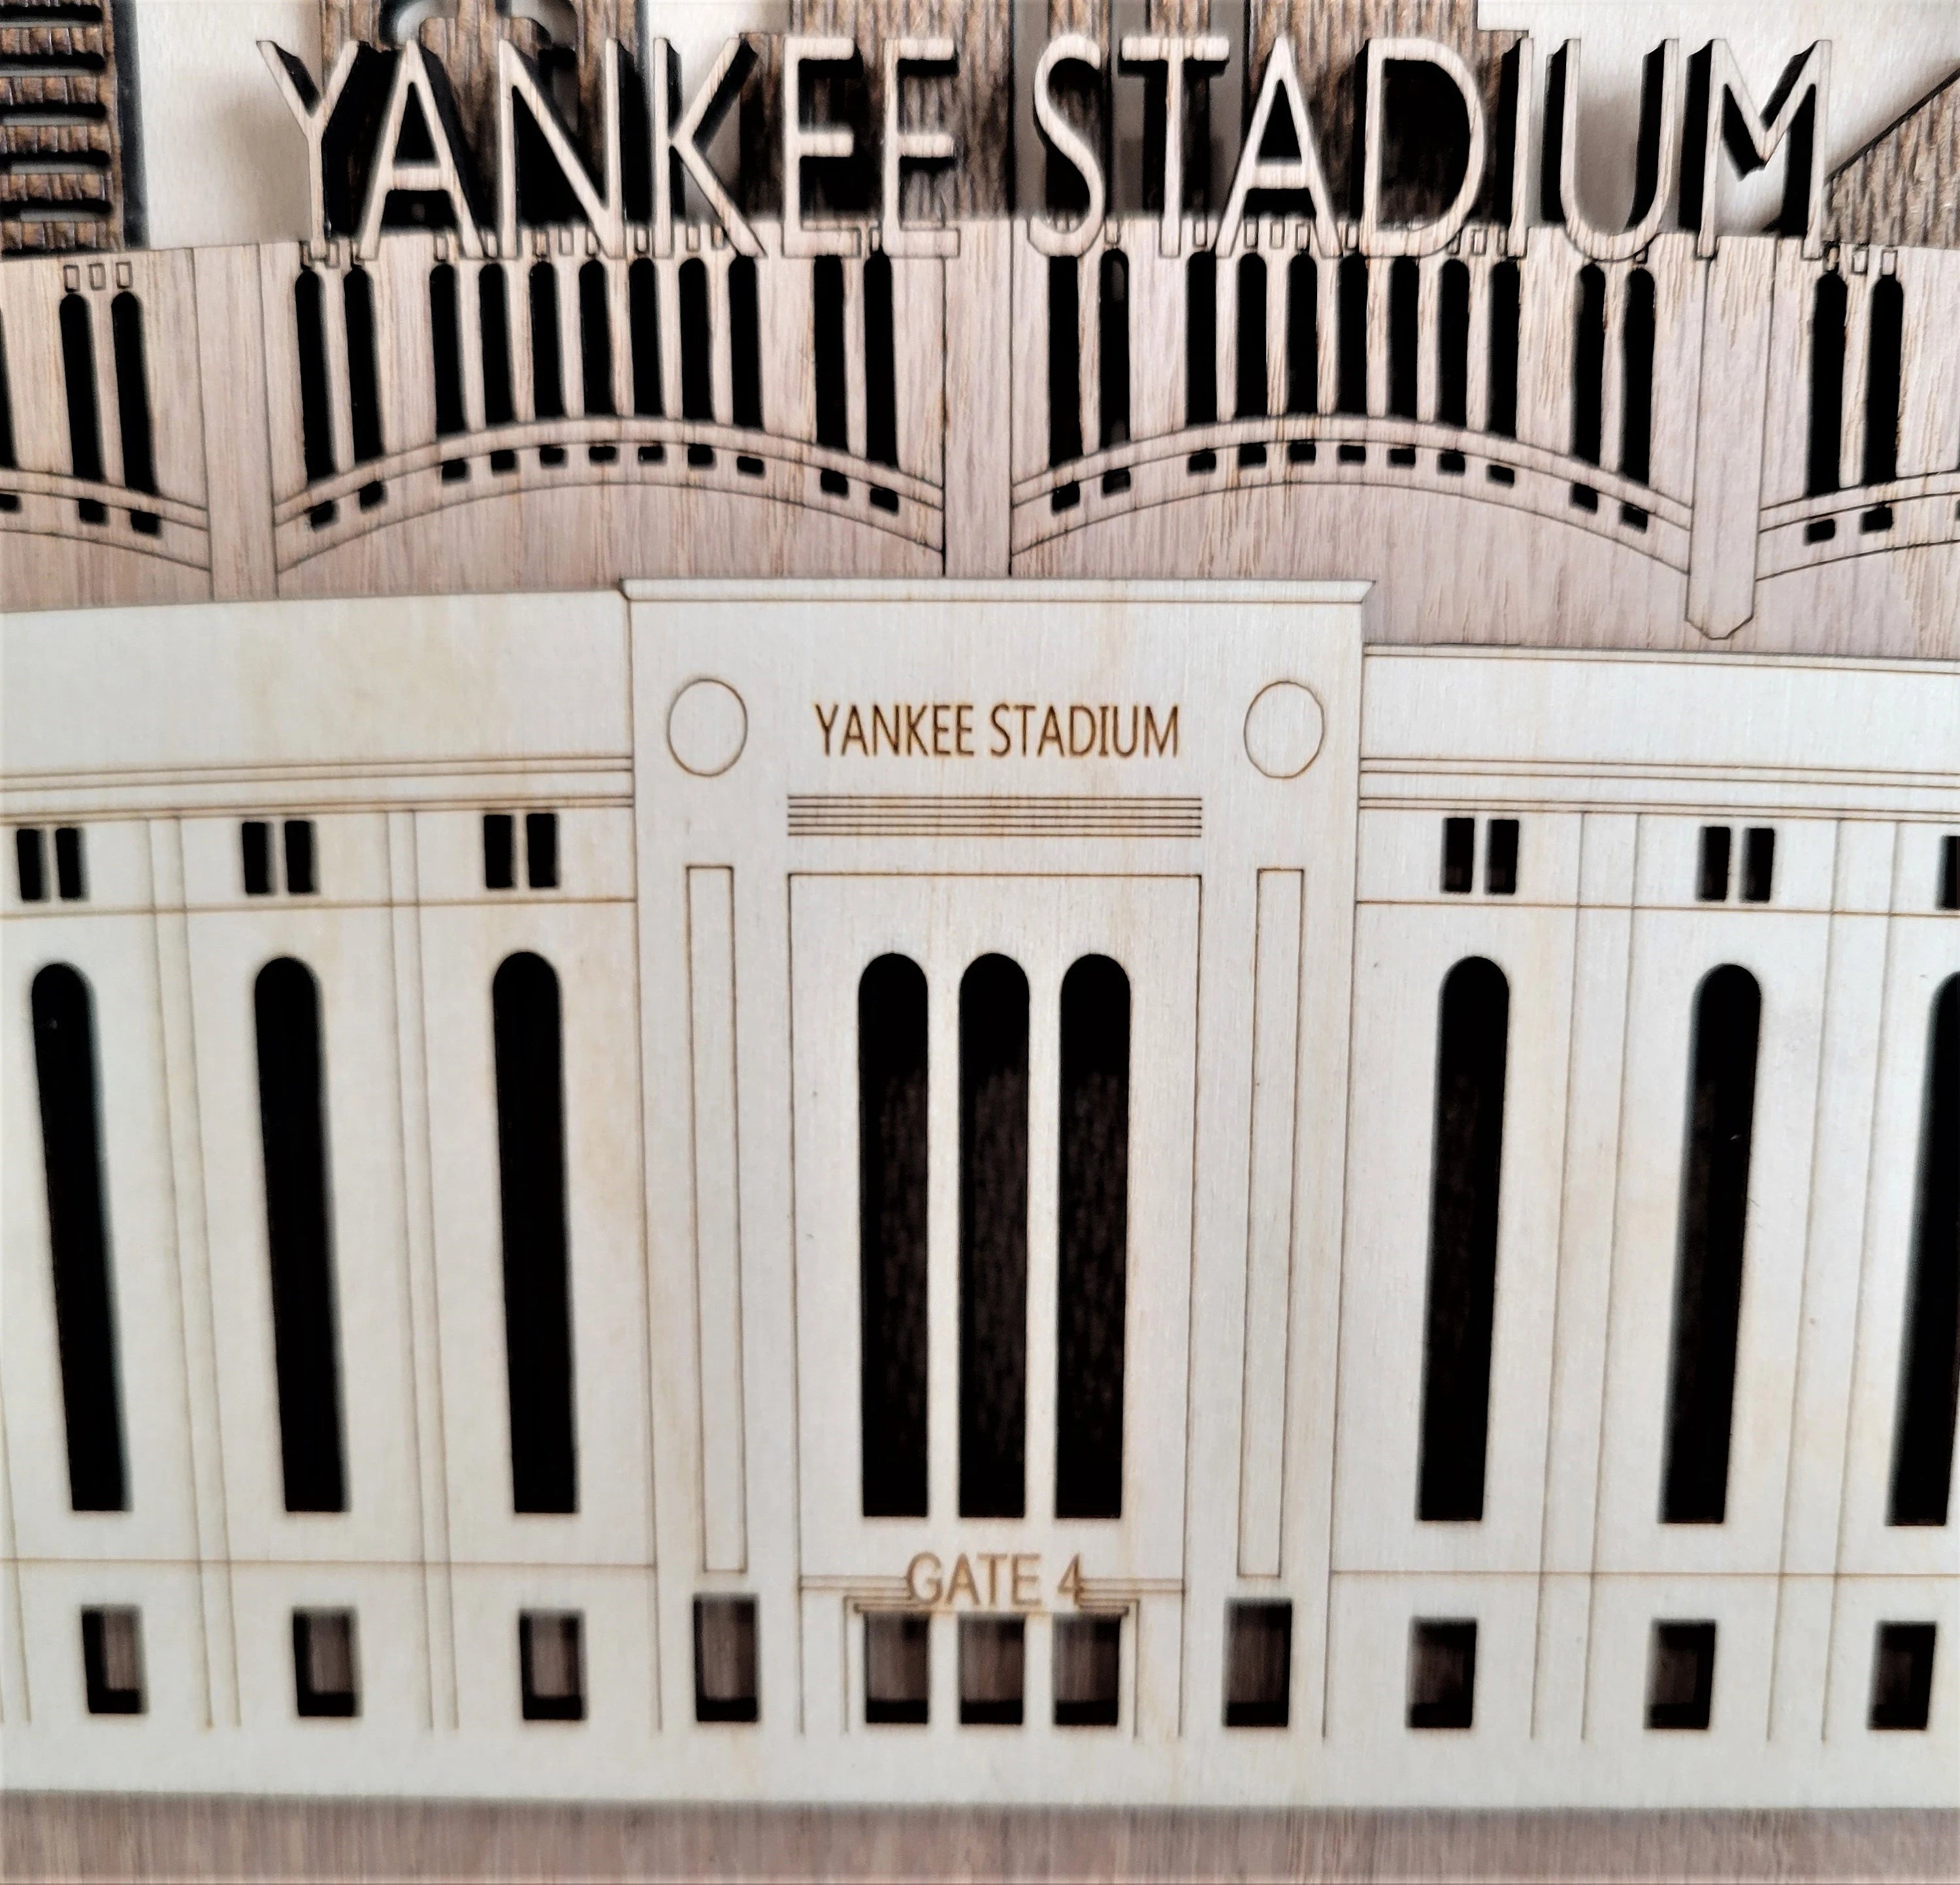 Yankee Stadium - Home of the New York Yankees